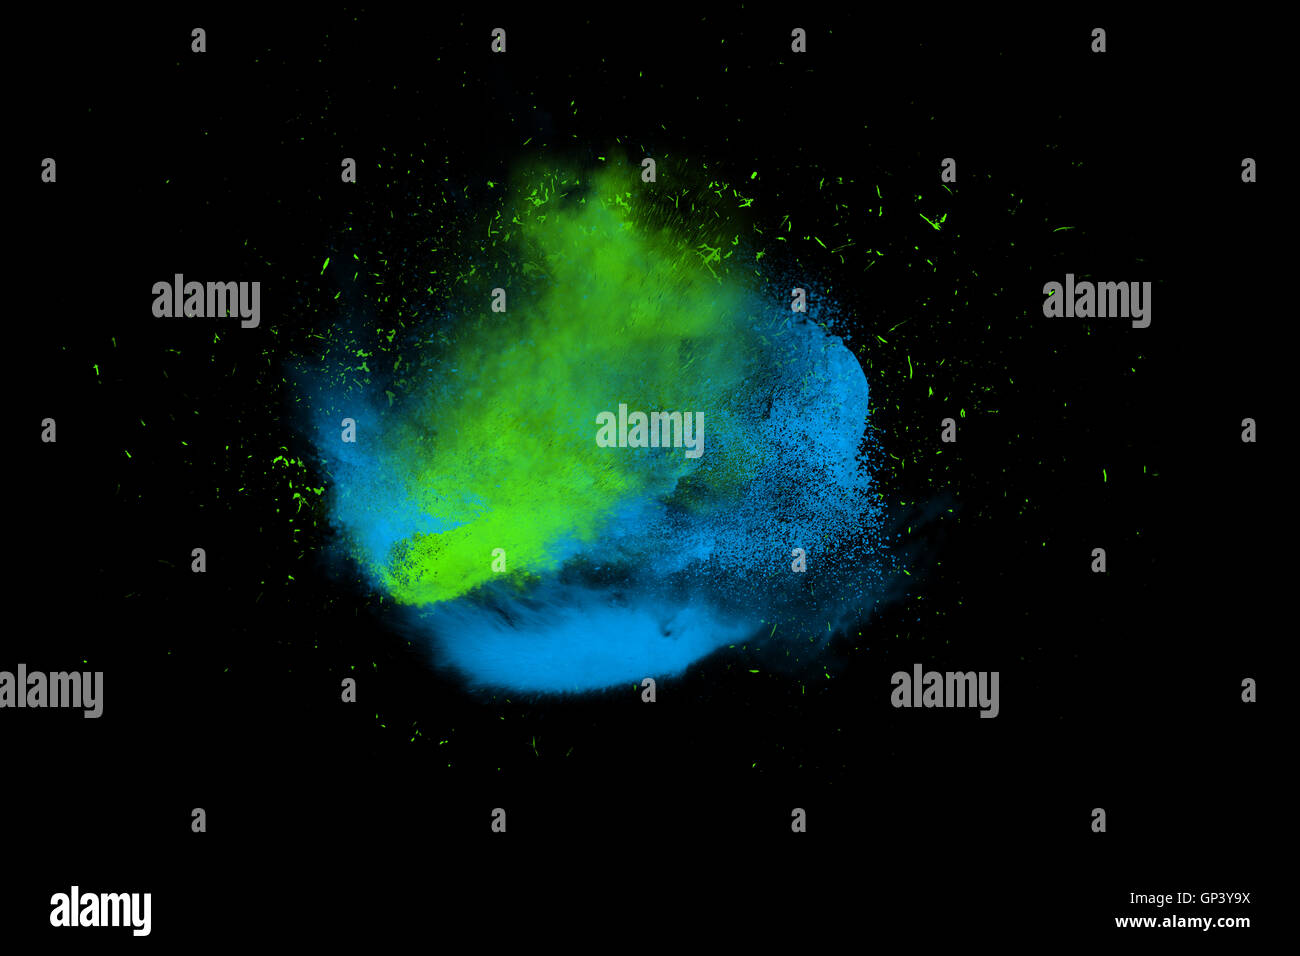 Congelare il movimento del blu e del verde di vernice in polvere di esplodere isolato sul nero, sfondo scuro. Disegno astratto di colore nuvola di polvere. Foto Stock